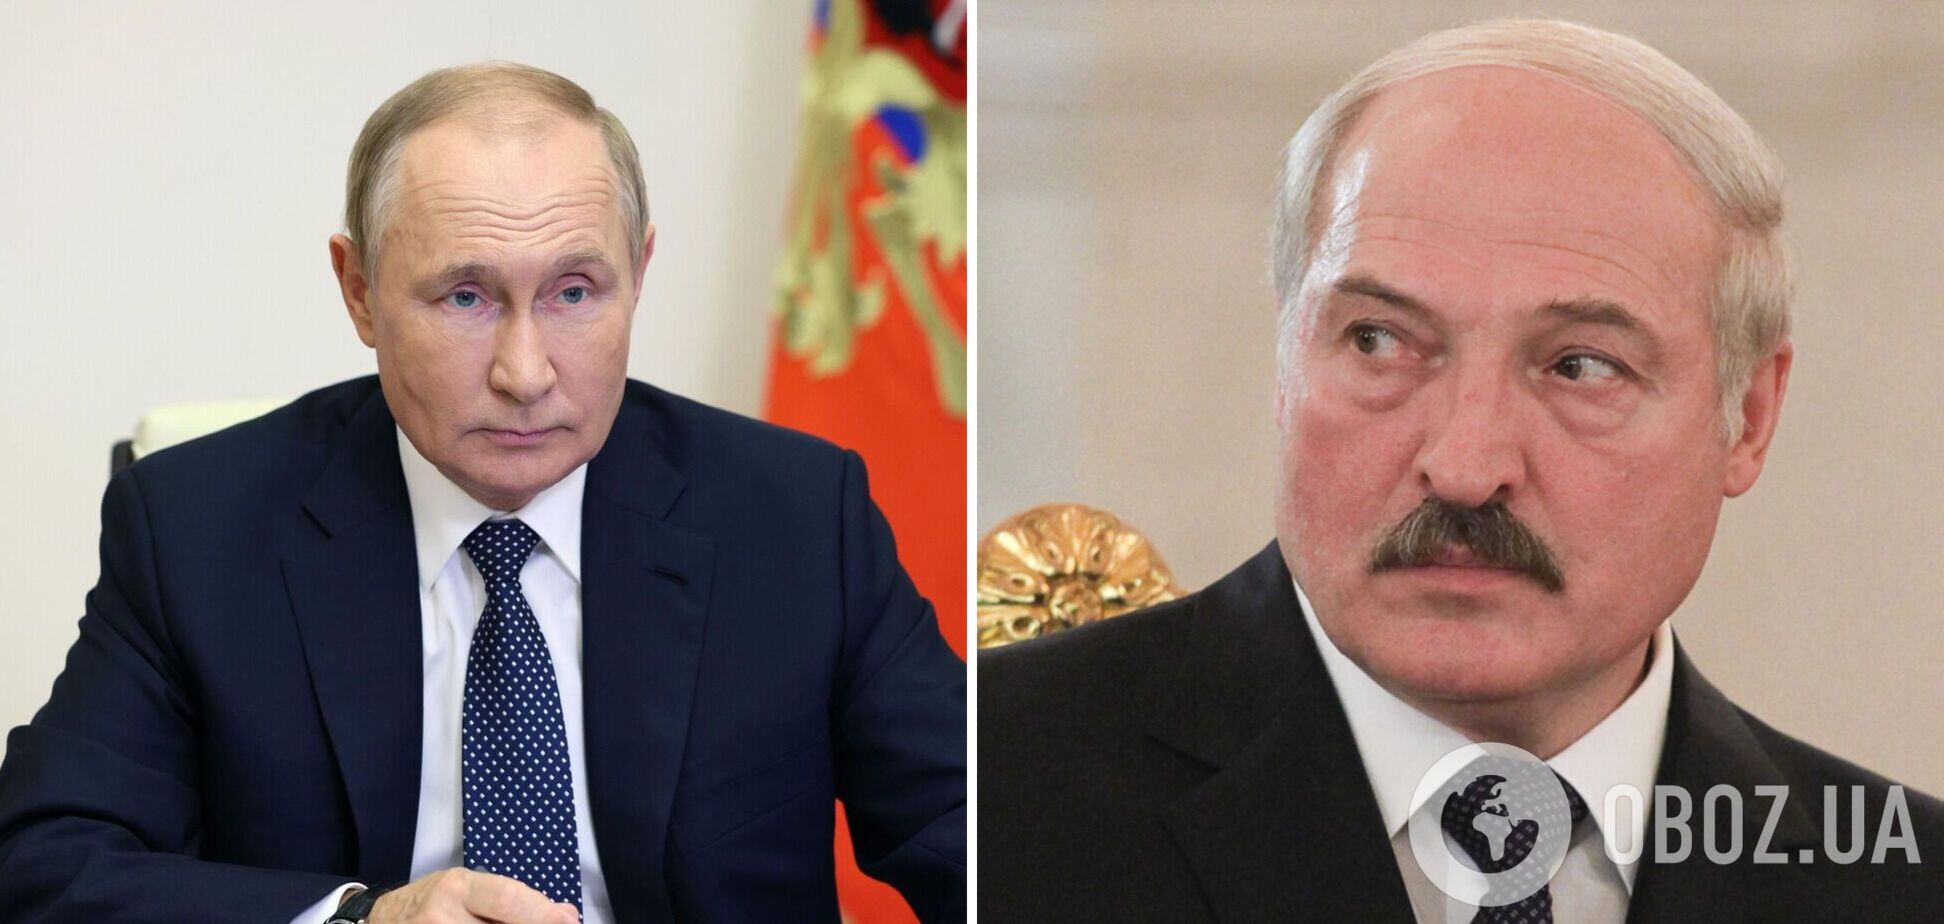 І ти, Лукашенку? Від Путіна тікають уявні друзі